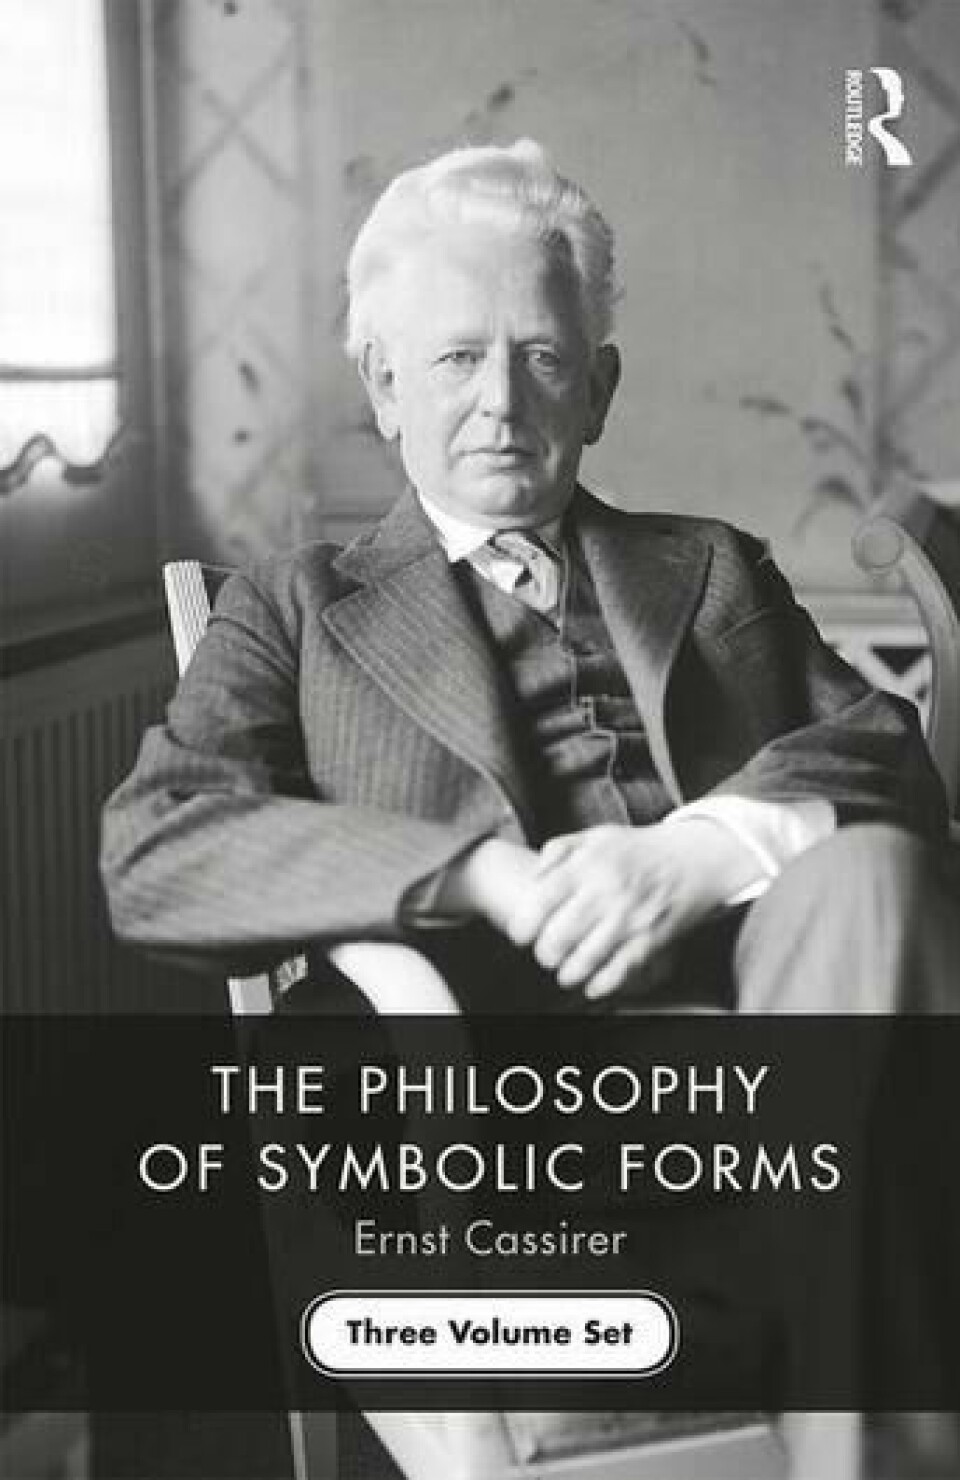 Første bind av Cassirers De symbolske formers filosofi ble gitt ut 1923 og er et sentralt verk hans forfatterskap. Her: Omslaget av nyoversettelsen til engelsk som ble gitt ut i 2020